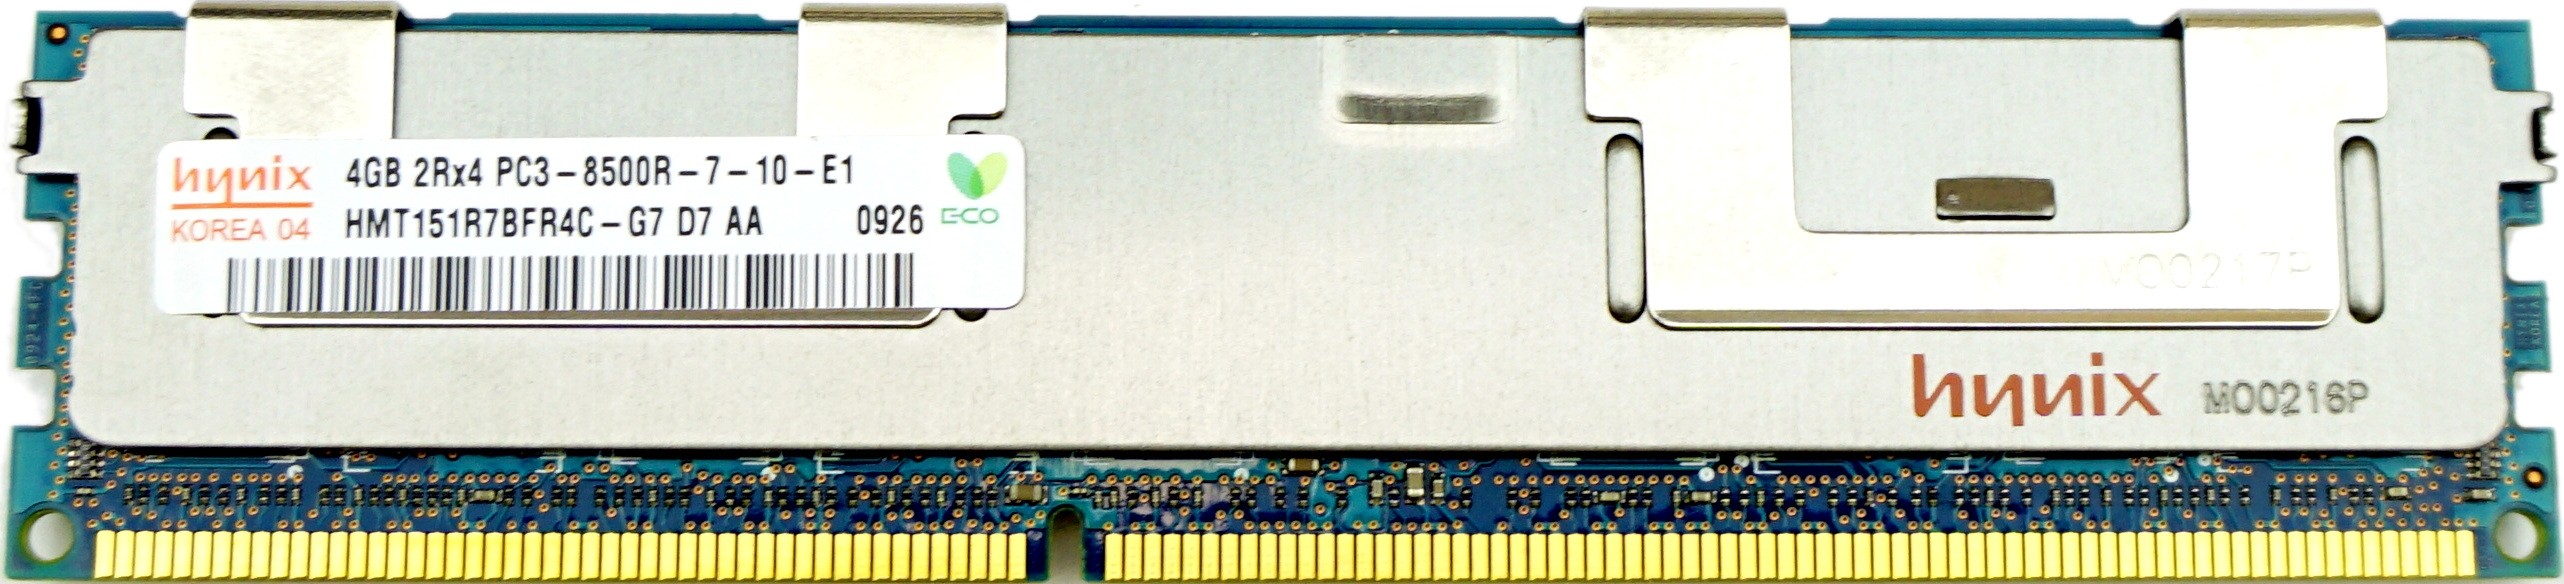 Hynix - 4GB PC3-8500R (DDR3-1066Mhz, 2RX4)